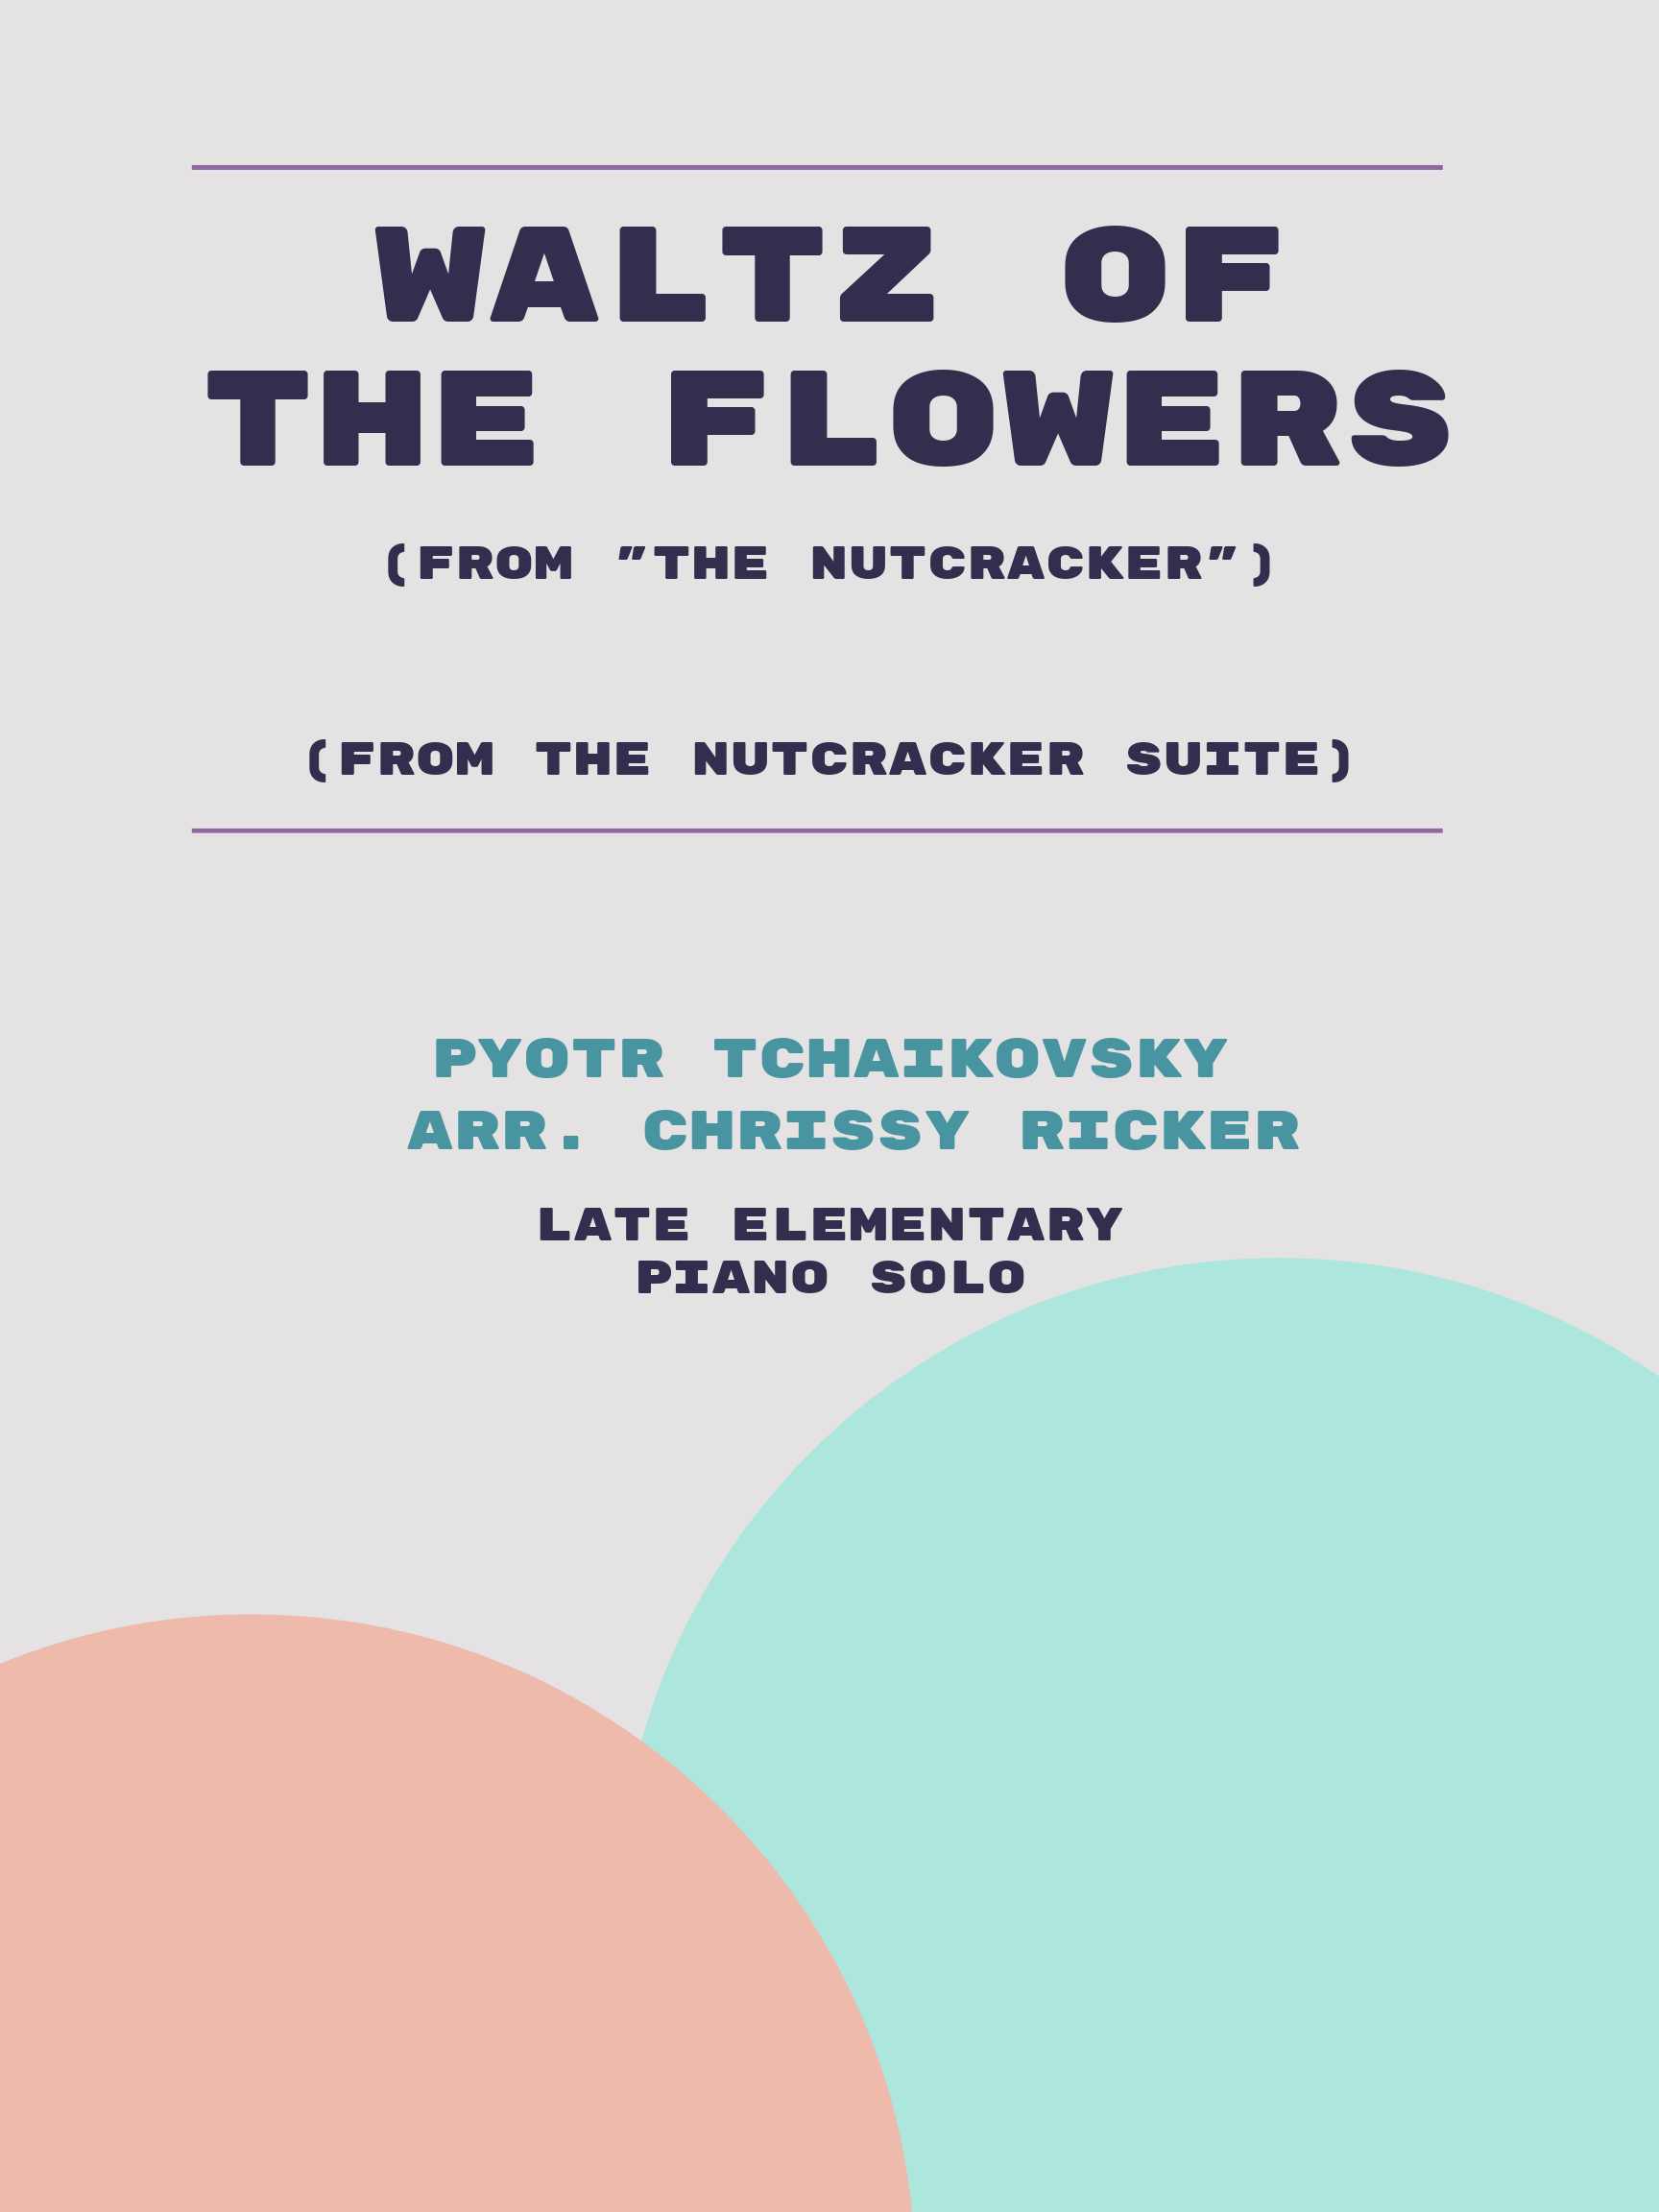 Waltz of the Flowers by Pyotr Tchaikovsky